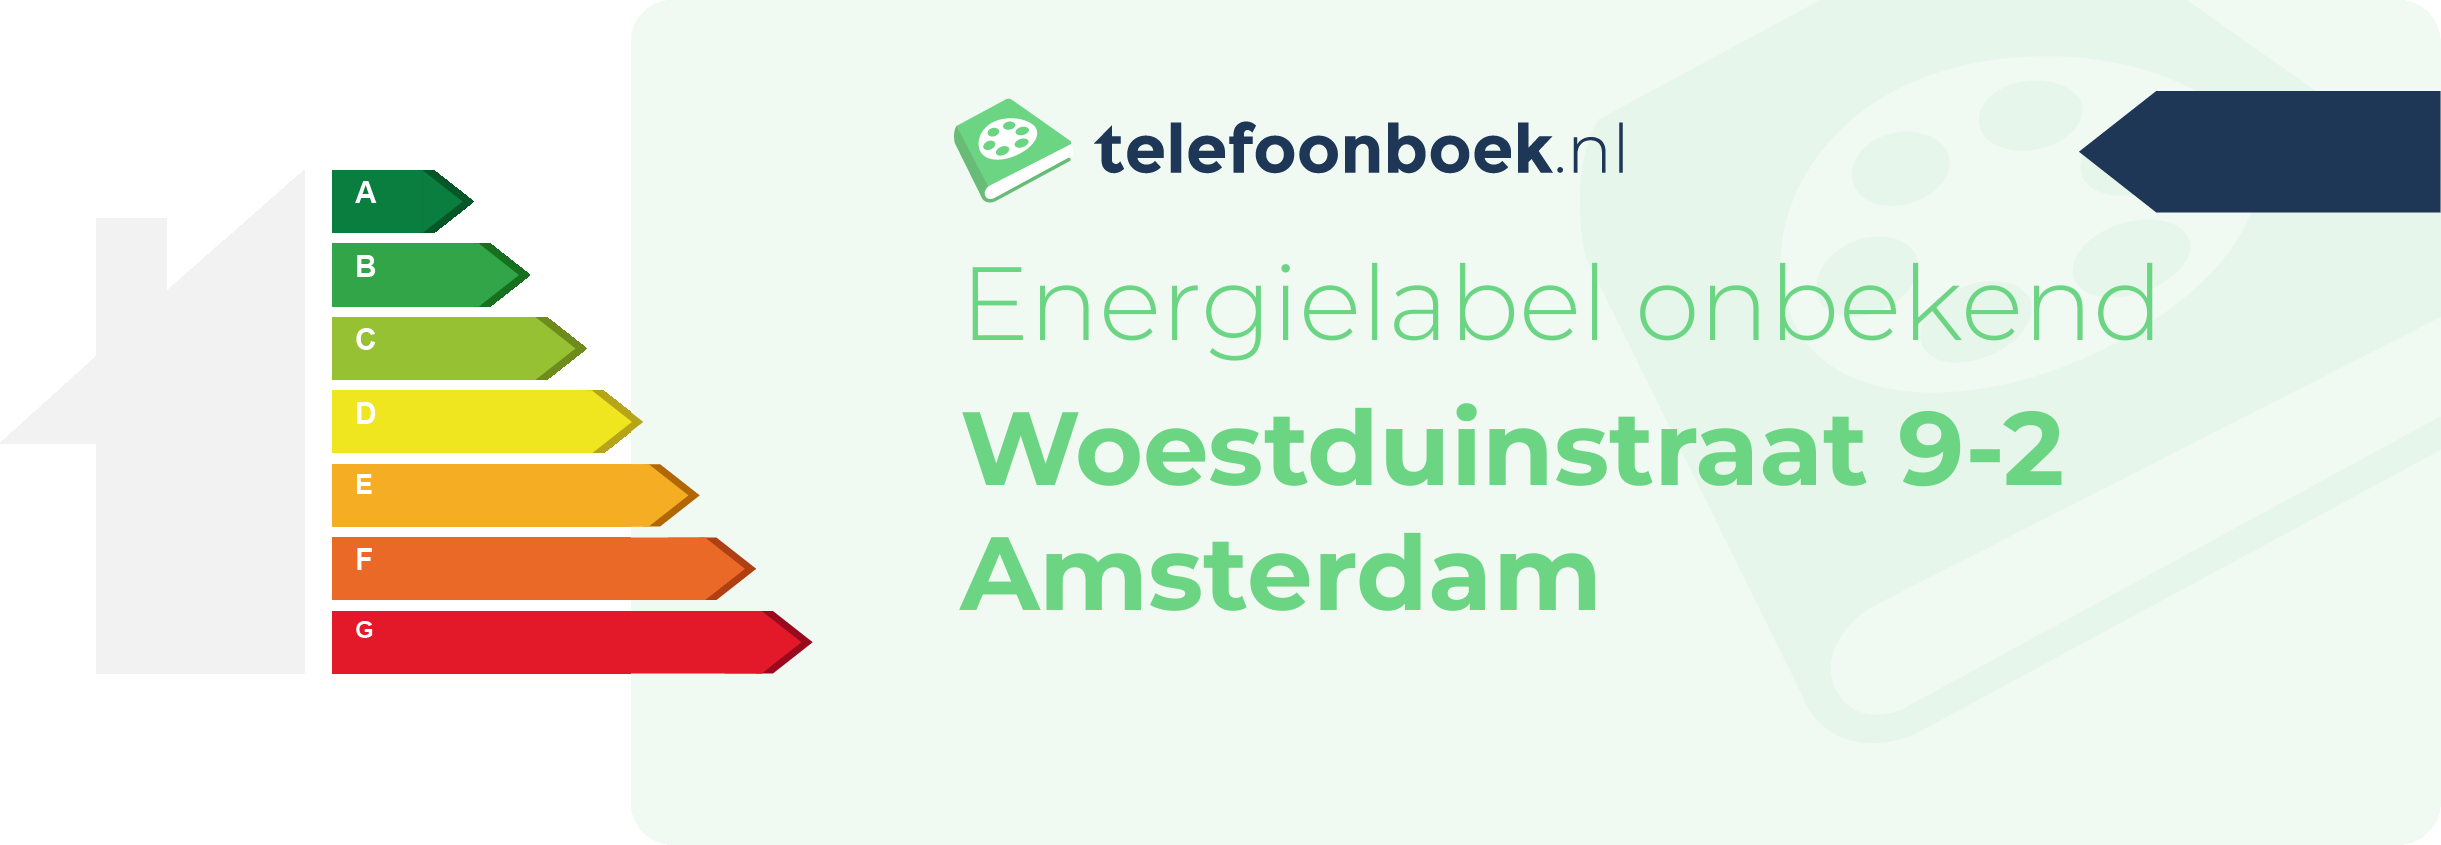 Energielabel Woestduinstraat 9-2 Amsterdam